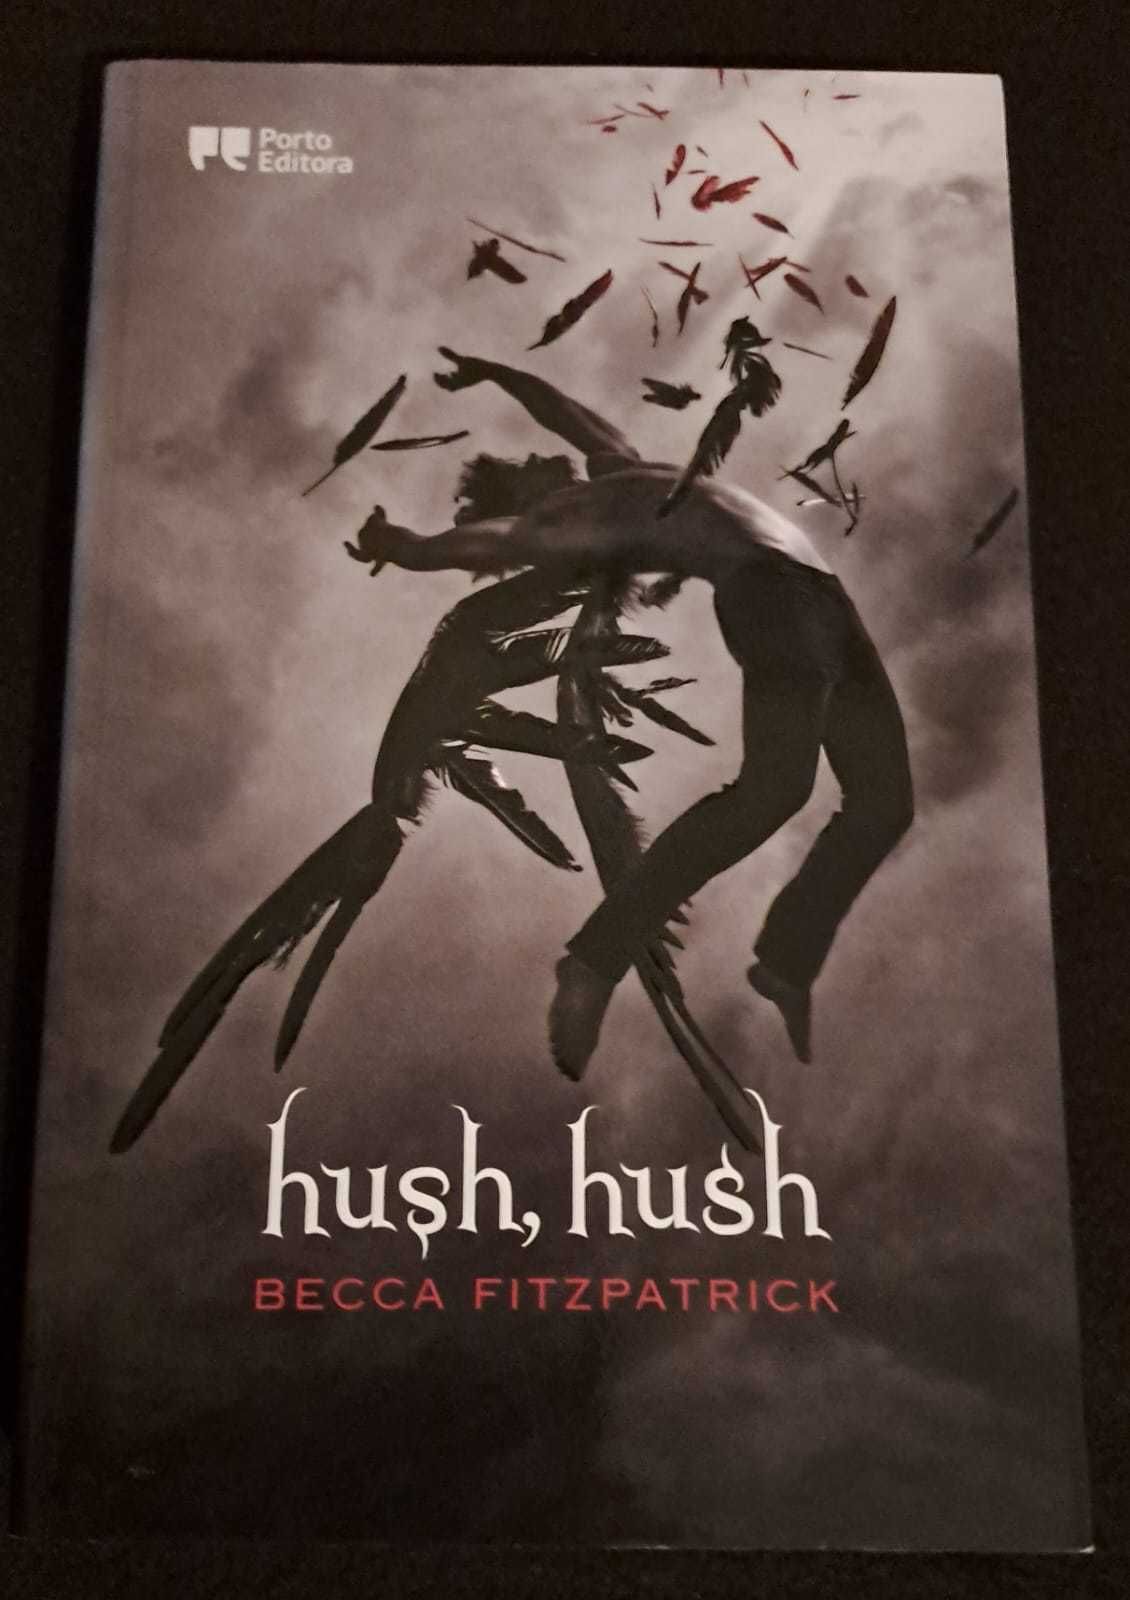 Portes Incluídos -"Hush, Hush" - Becca Fitzpatrick